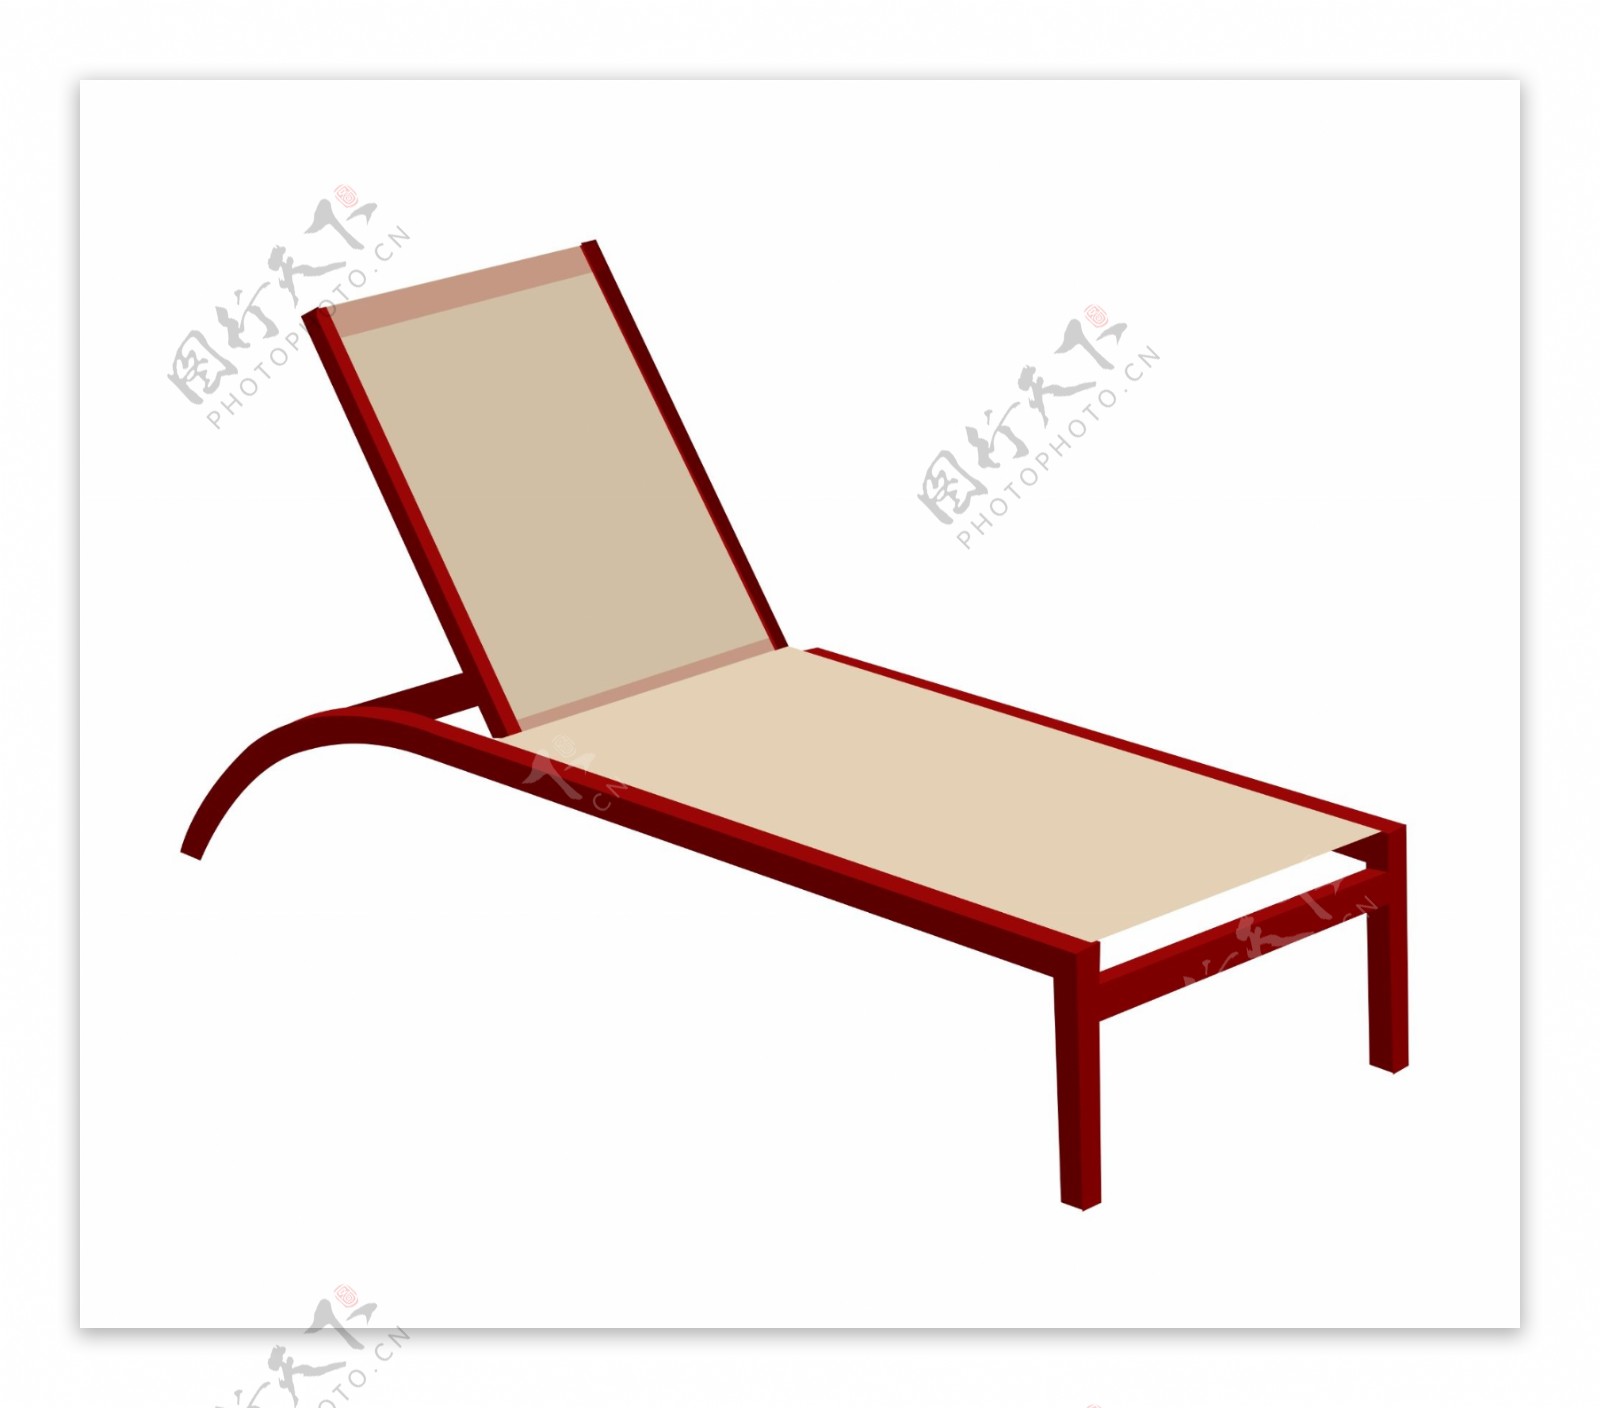 夏季红木躺椅